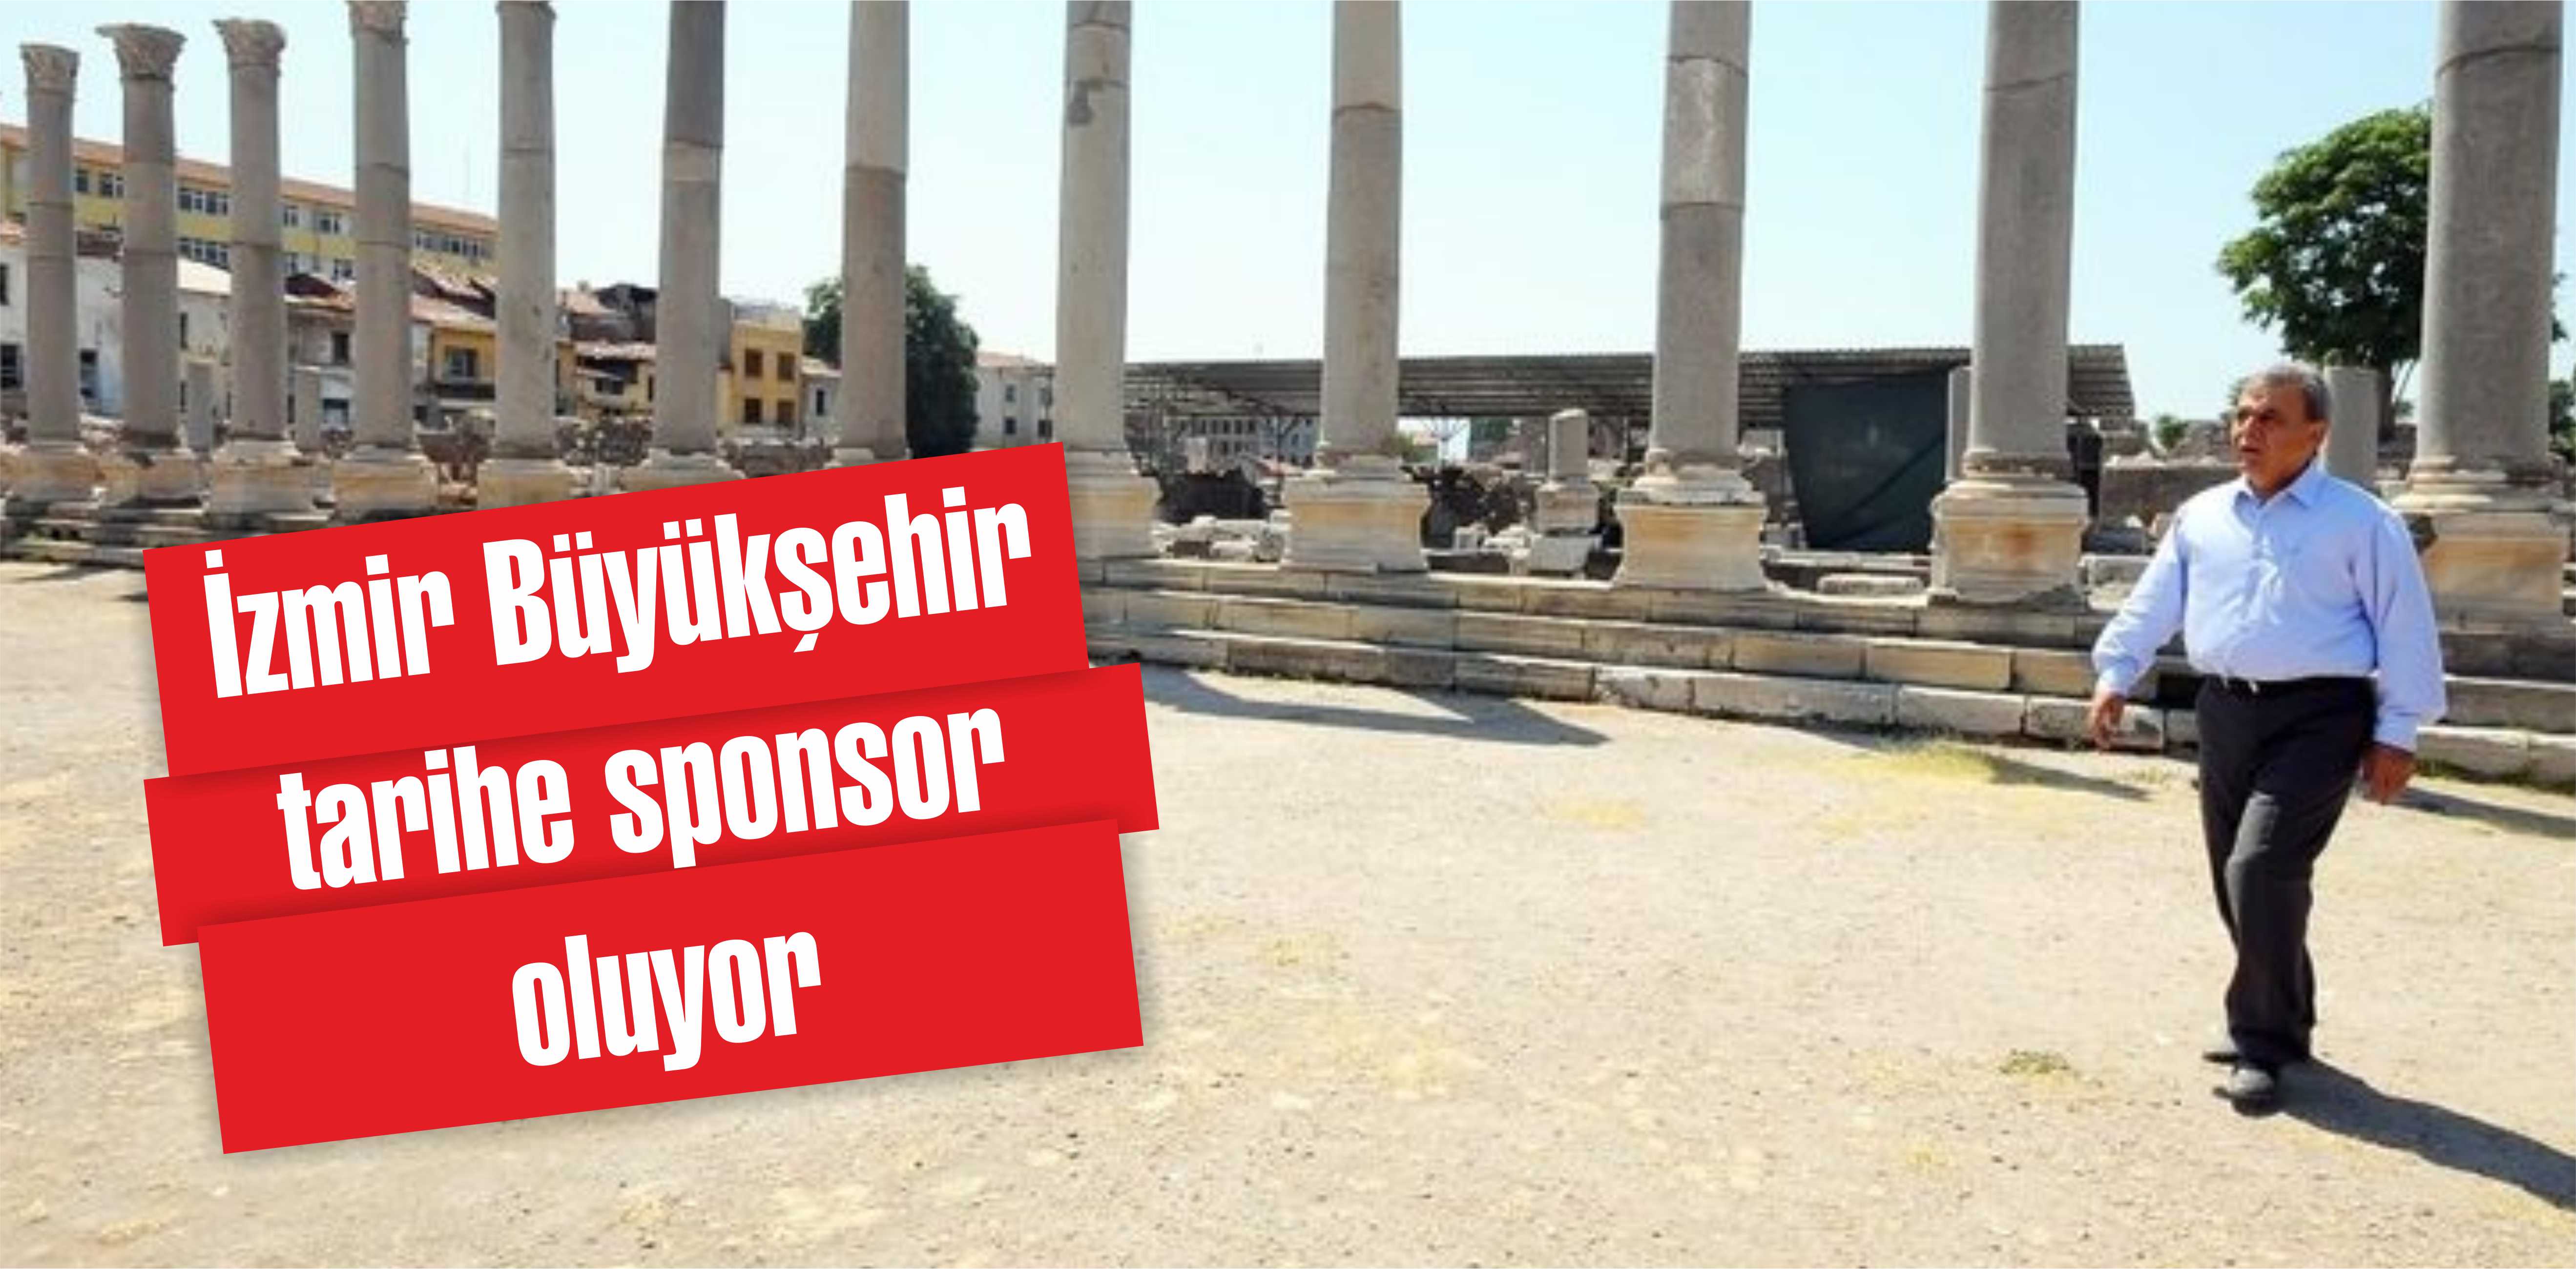 İzmir Büyükşehir tarihe sponsor oluyor